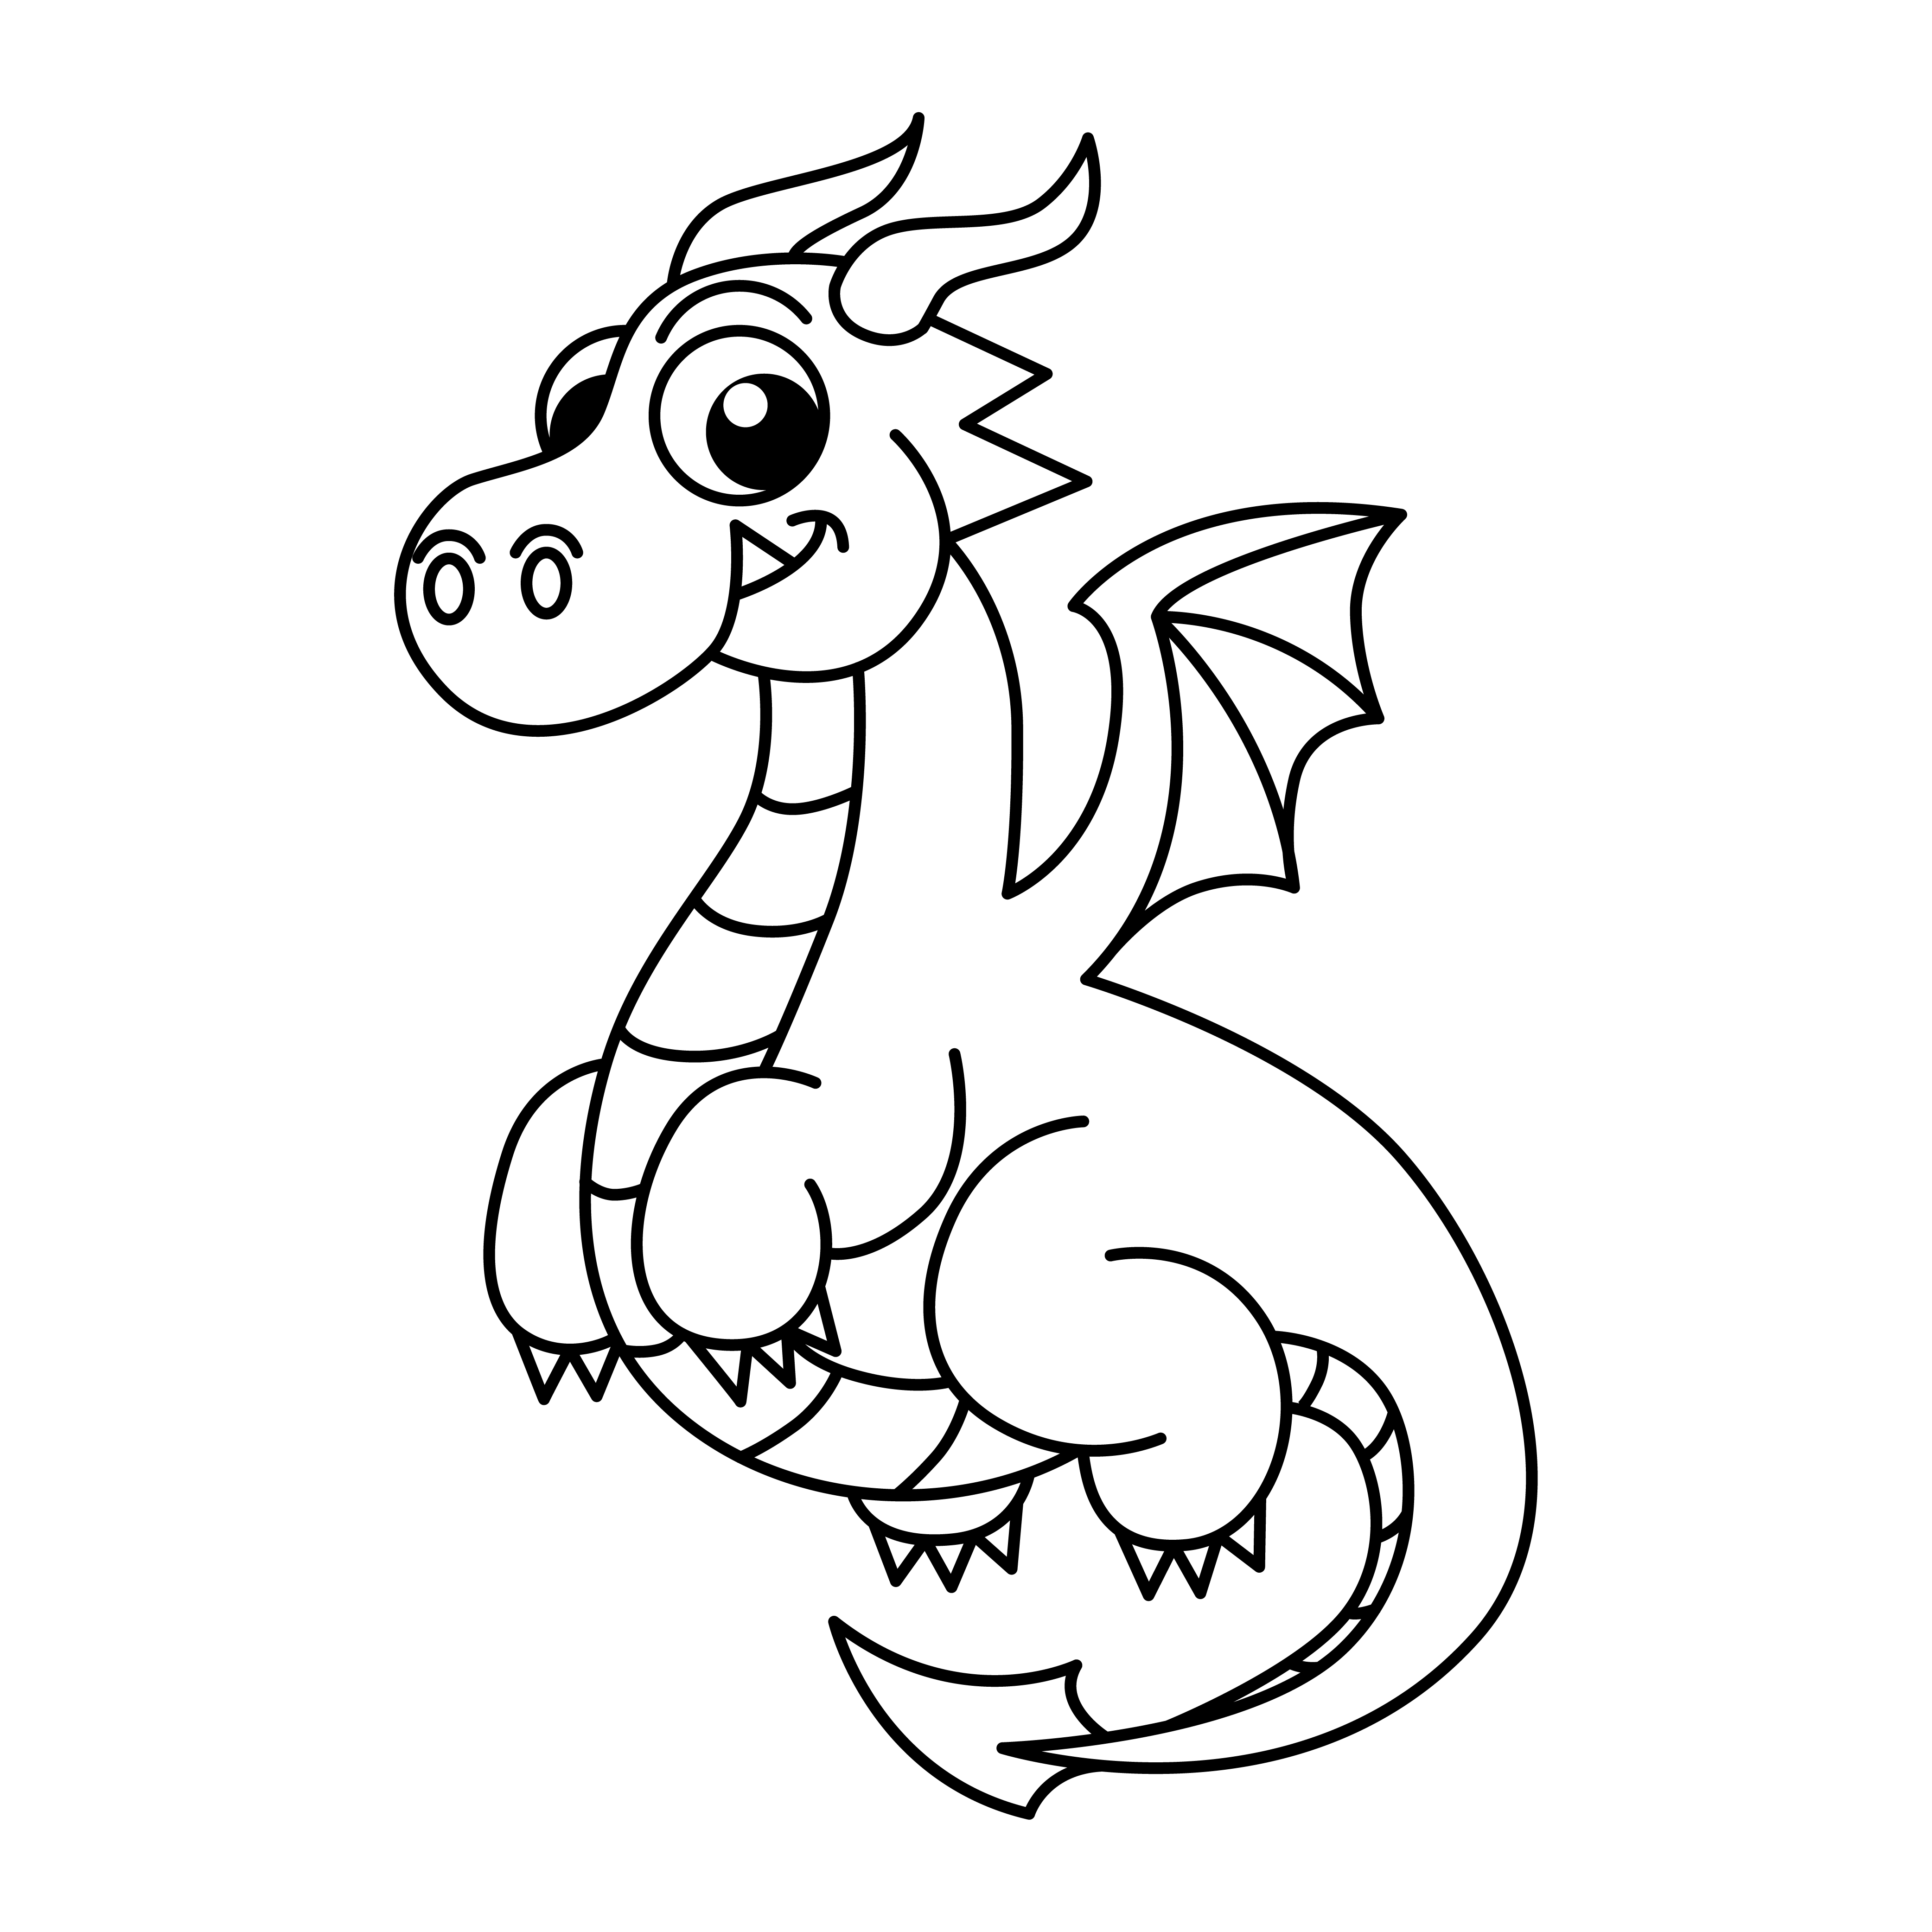 Раскраска симпатичный маленький дракон формата А4 в высоком качестве